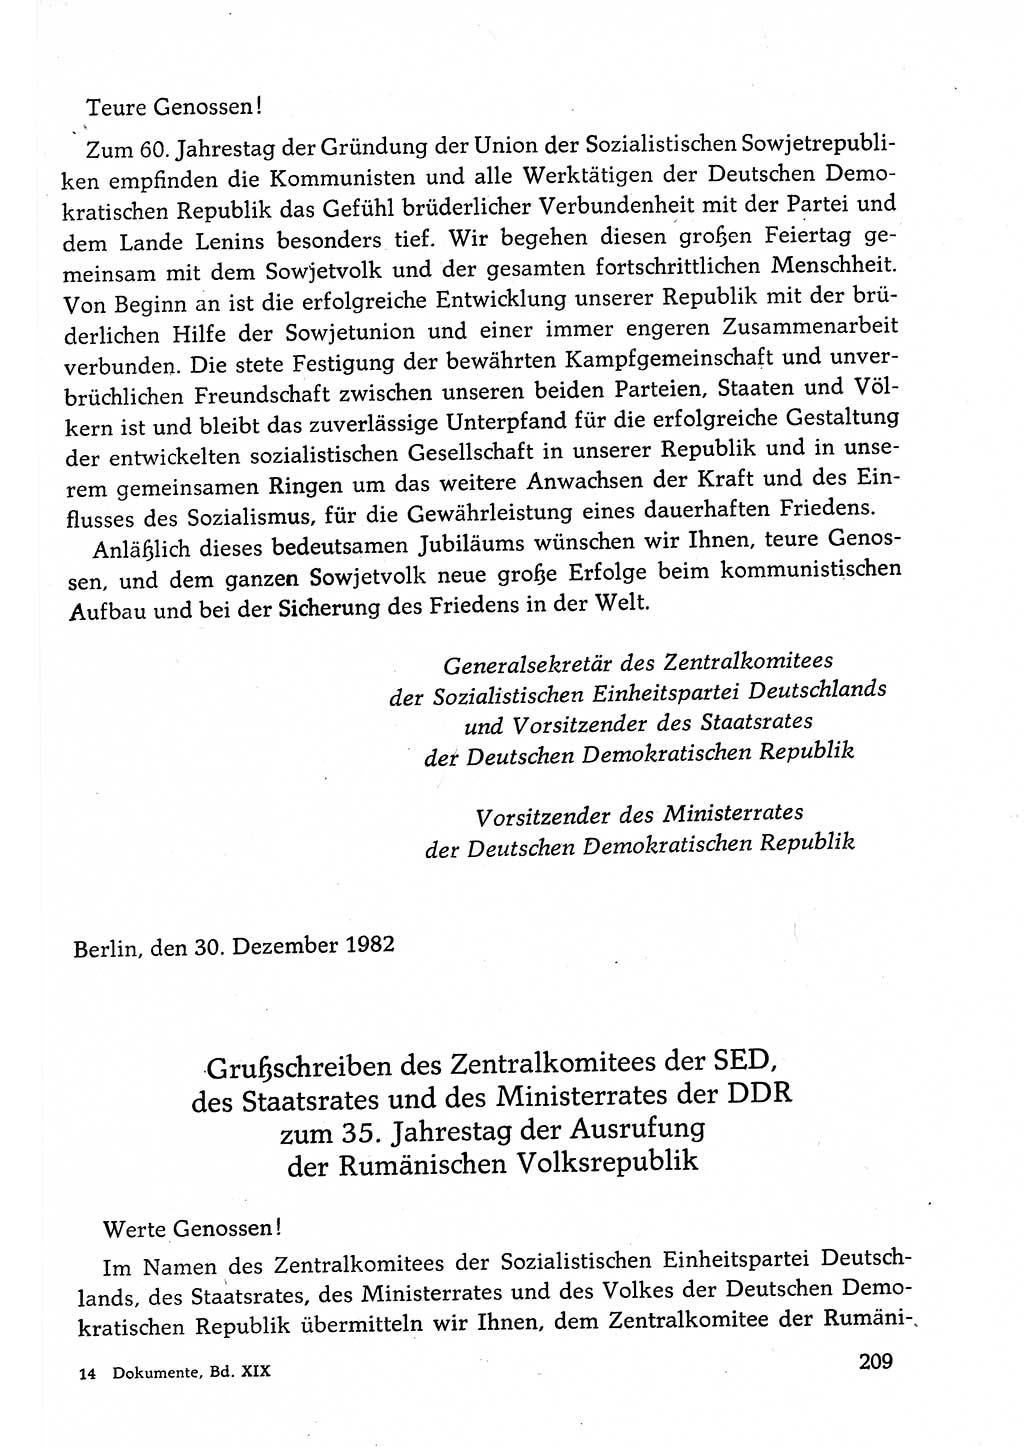 Dokumente der Sozialistischen Einheitspartei Deutschlands (SED) [Deutsche Demokratische Republik (DDR)] 1982-1983, Seite 209 (Dok. SED DDR 1982-1983, S. 209)